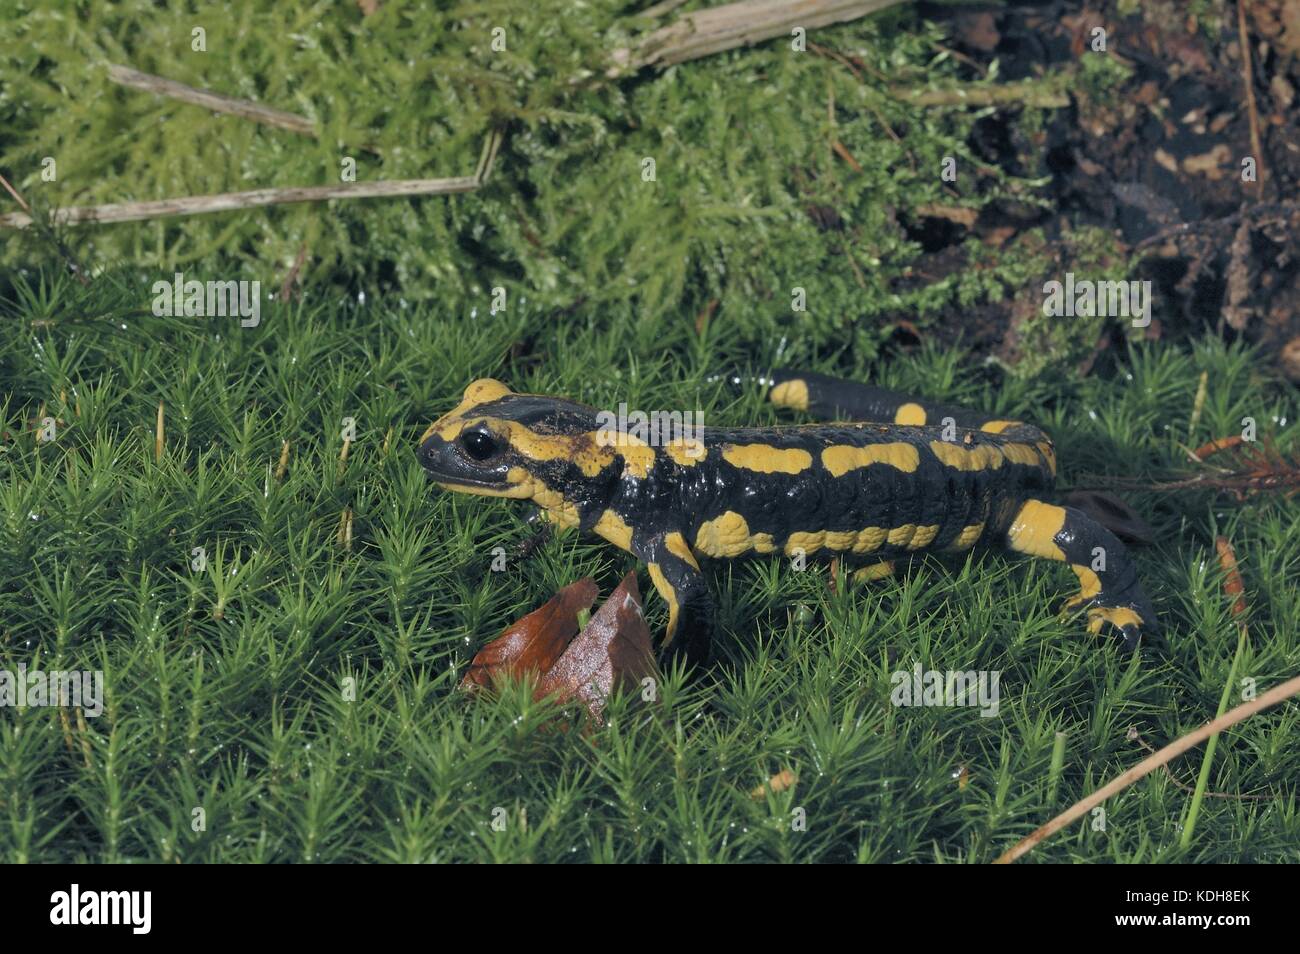 Salamandra (Salamandra salamandra terrestris) che si muove su un tappeto di mos in un bosco in estate Foto Stock